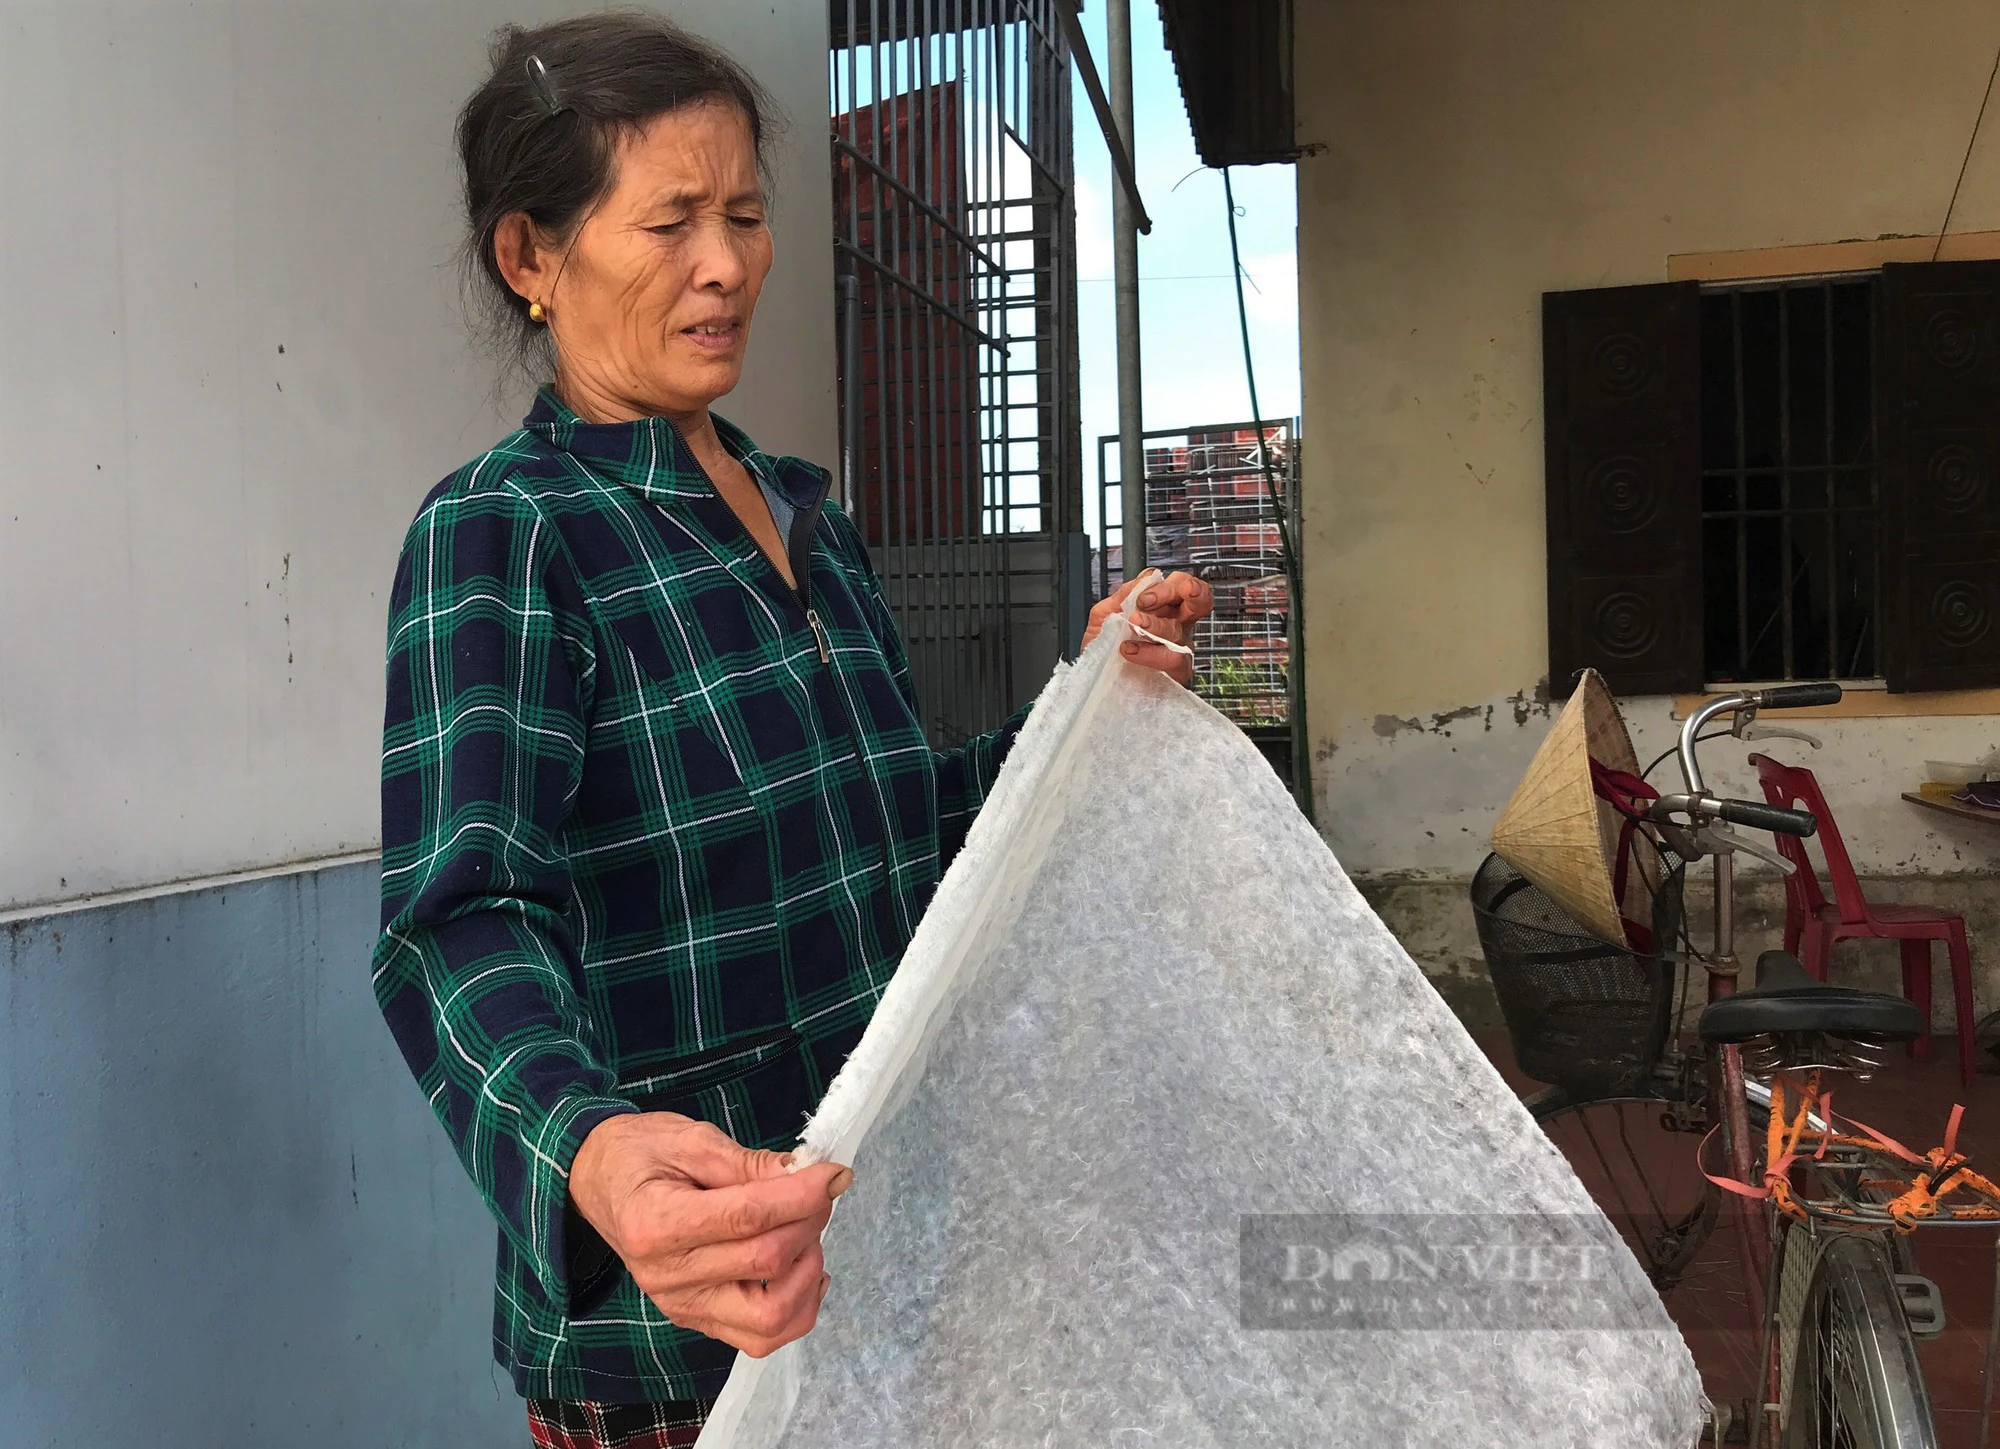 Làng duy nhất ở Nghệ An còn giữ một nghề độc lạ, giã cây lấy nước tráng loại giấy dó mỏng tanh - Ảnh 5.